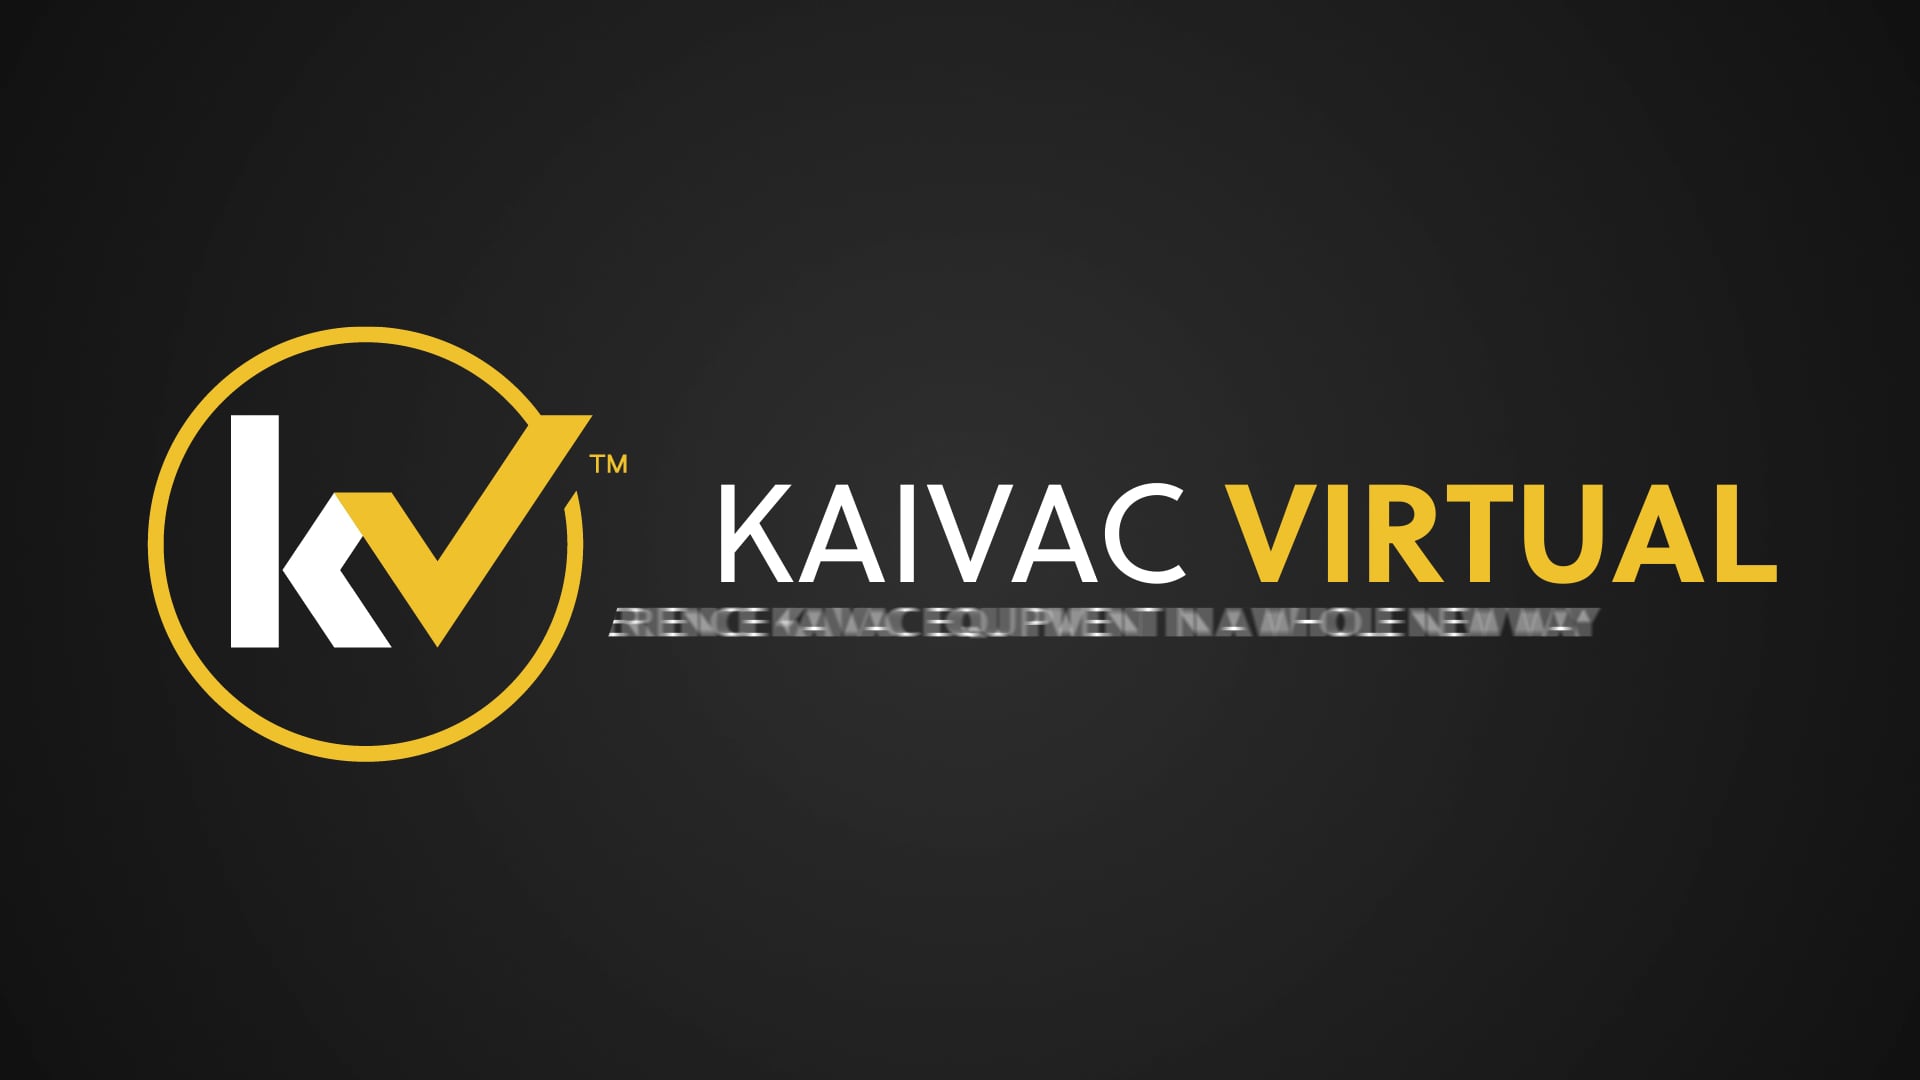 Kaivac Virtual Studio Tour